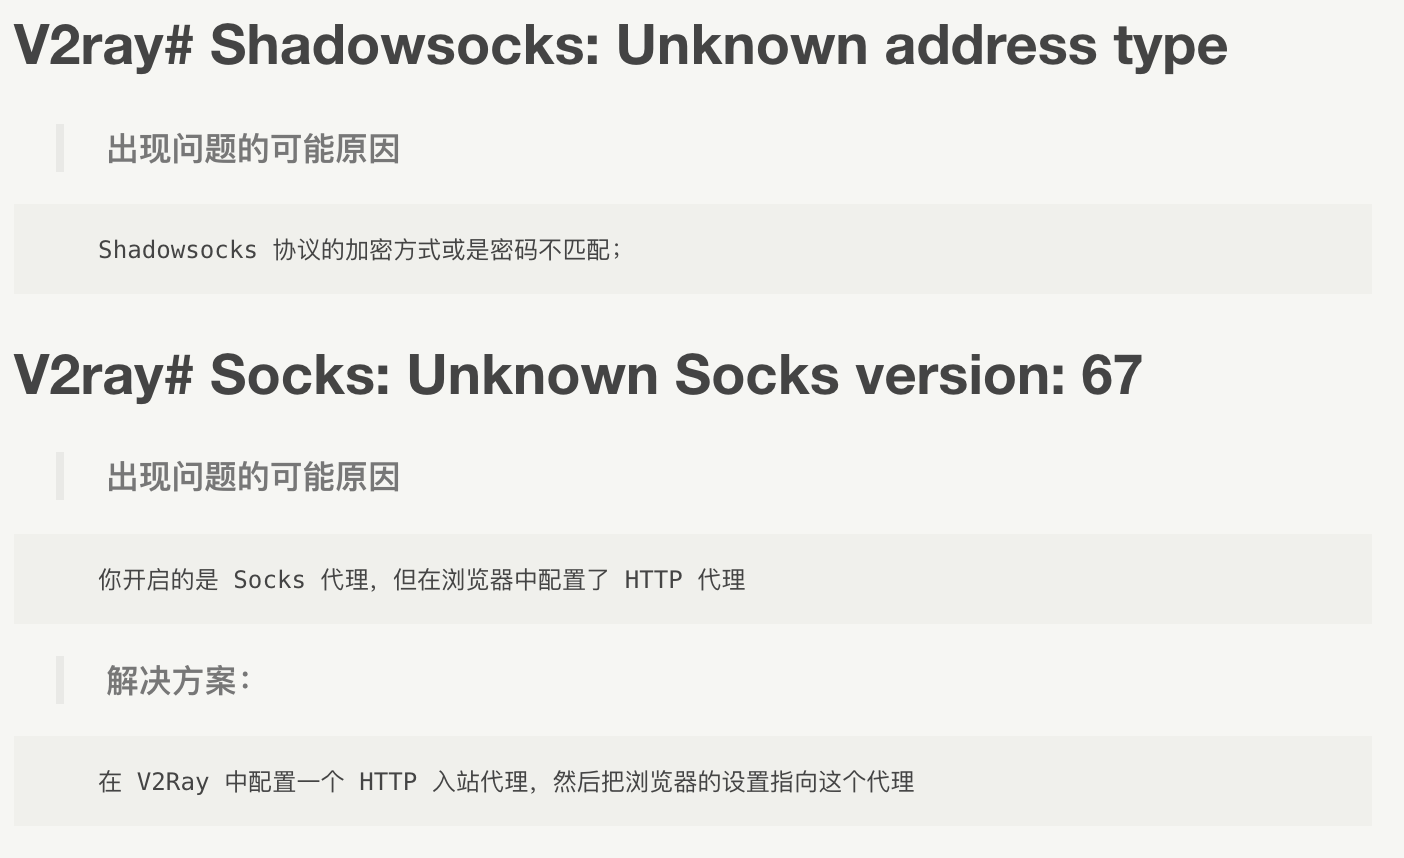 #V2ray# Shadowsocks: Unknown address type